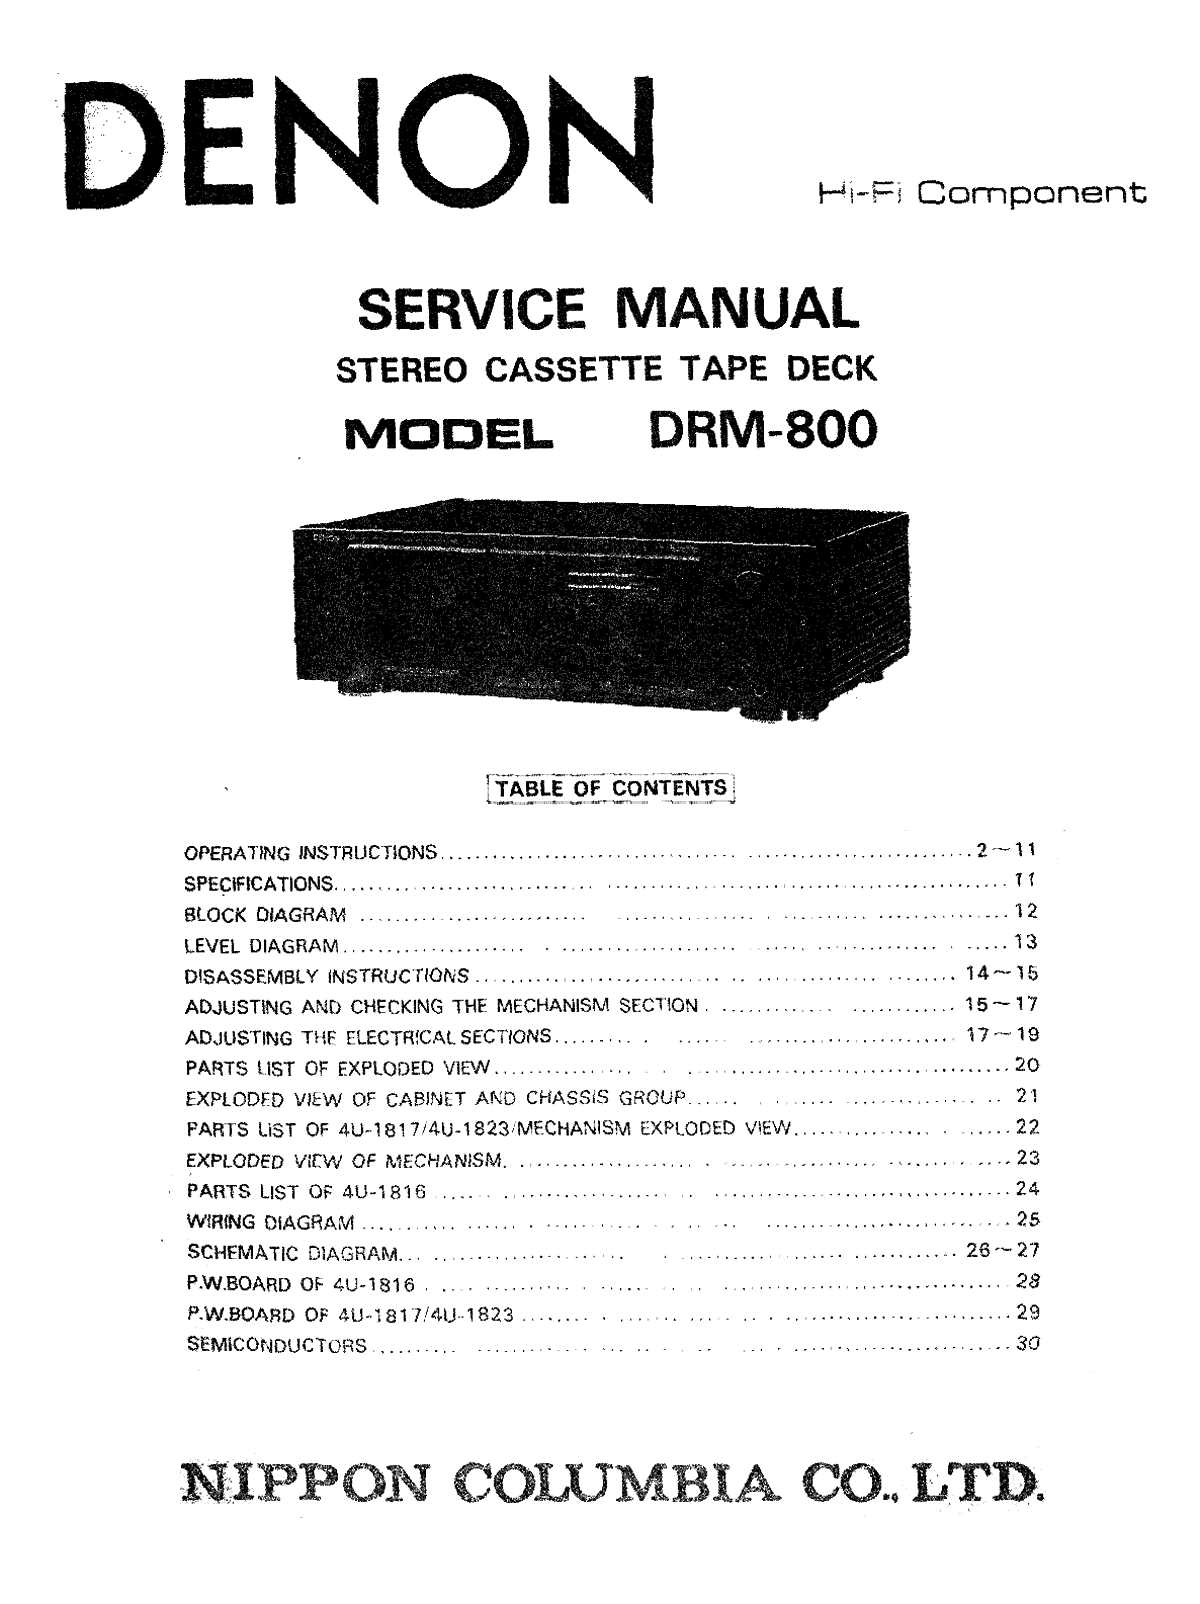 Сервисная инструкция Denon DRM-800